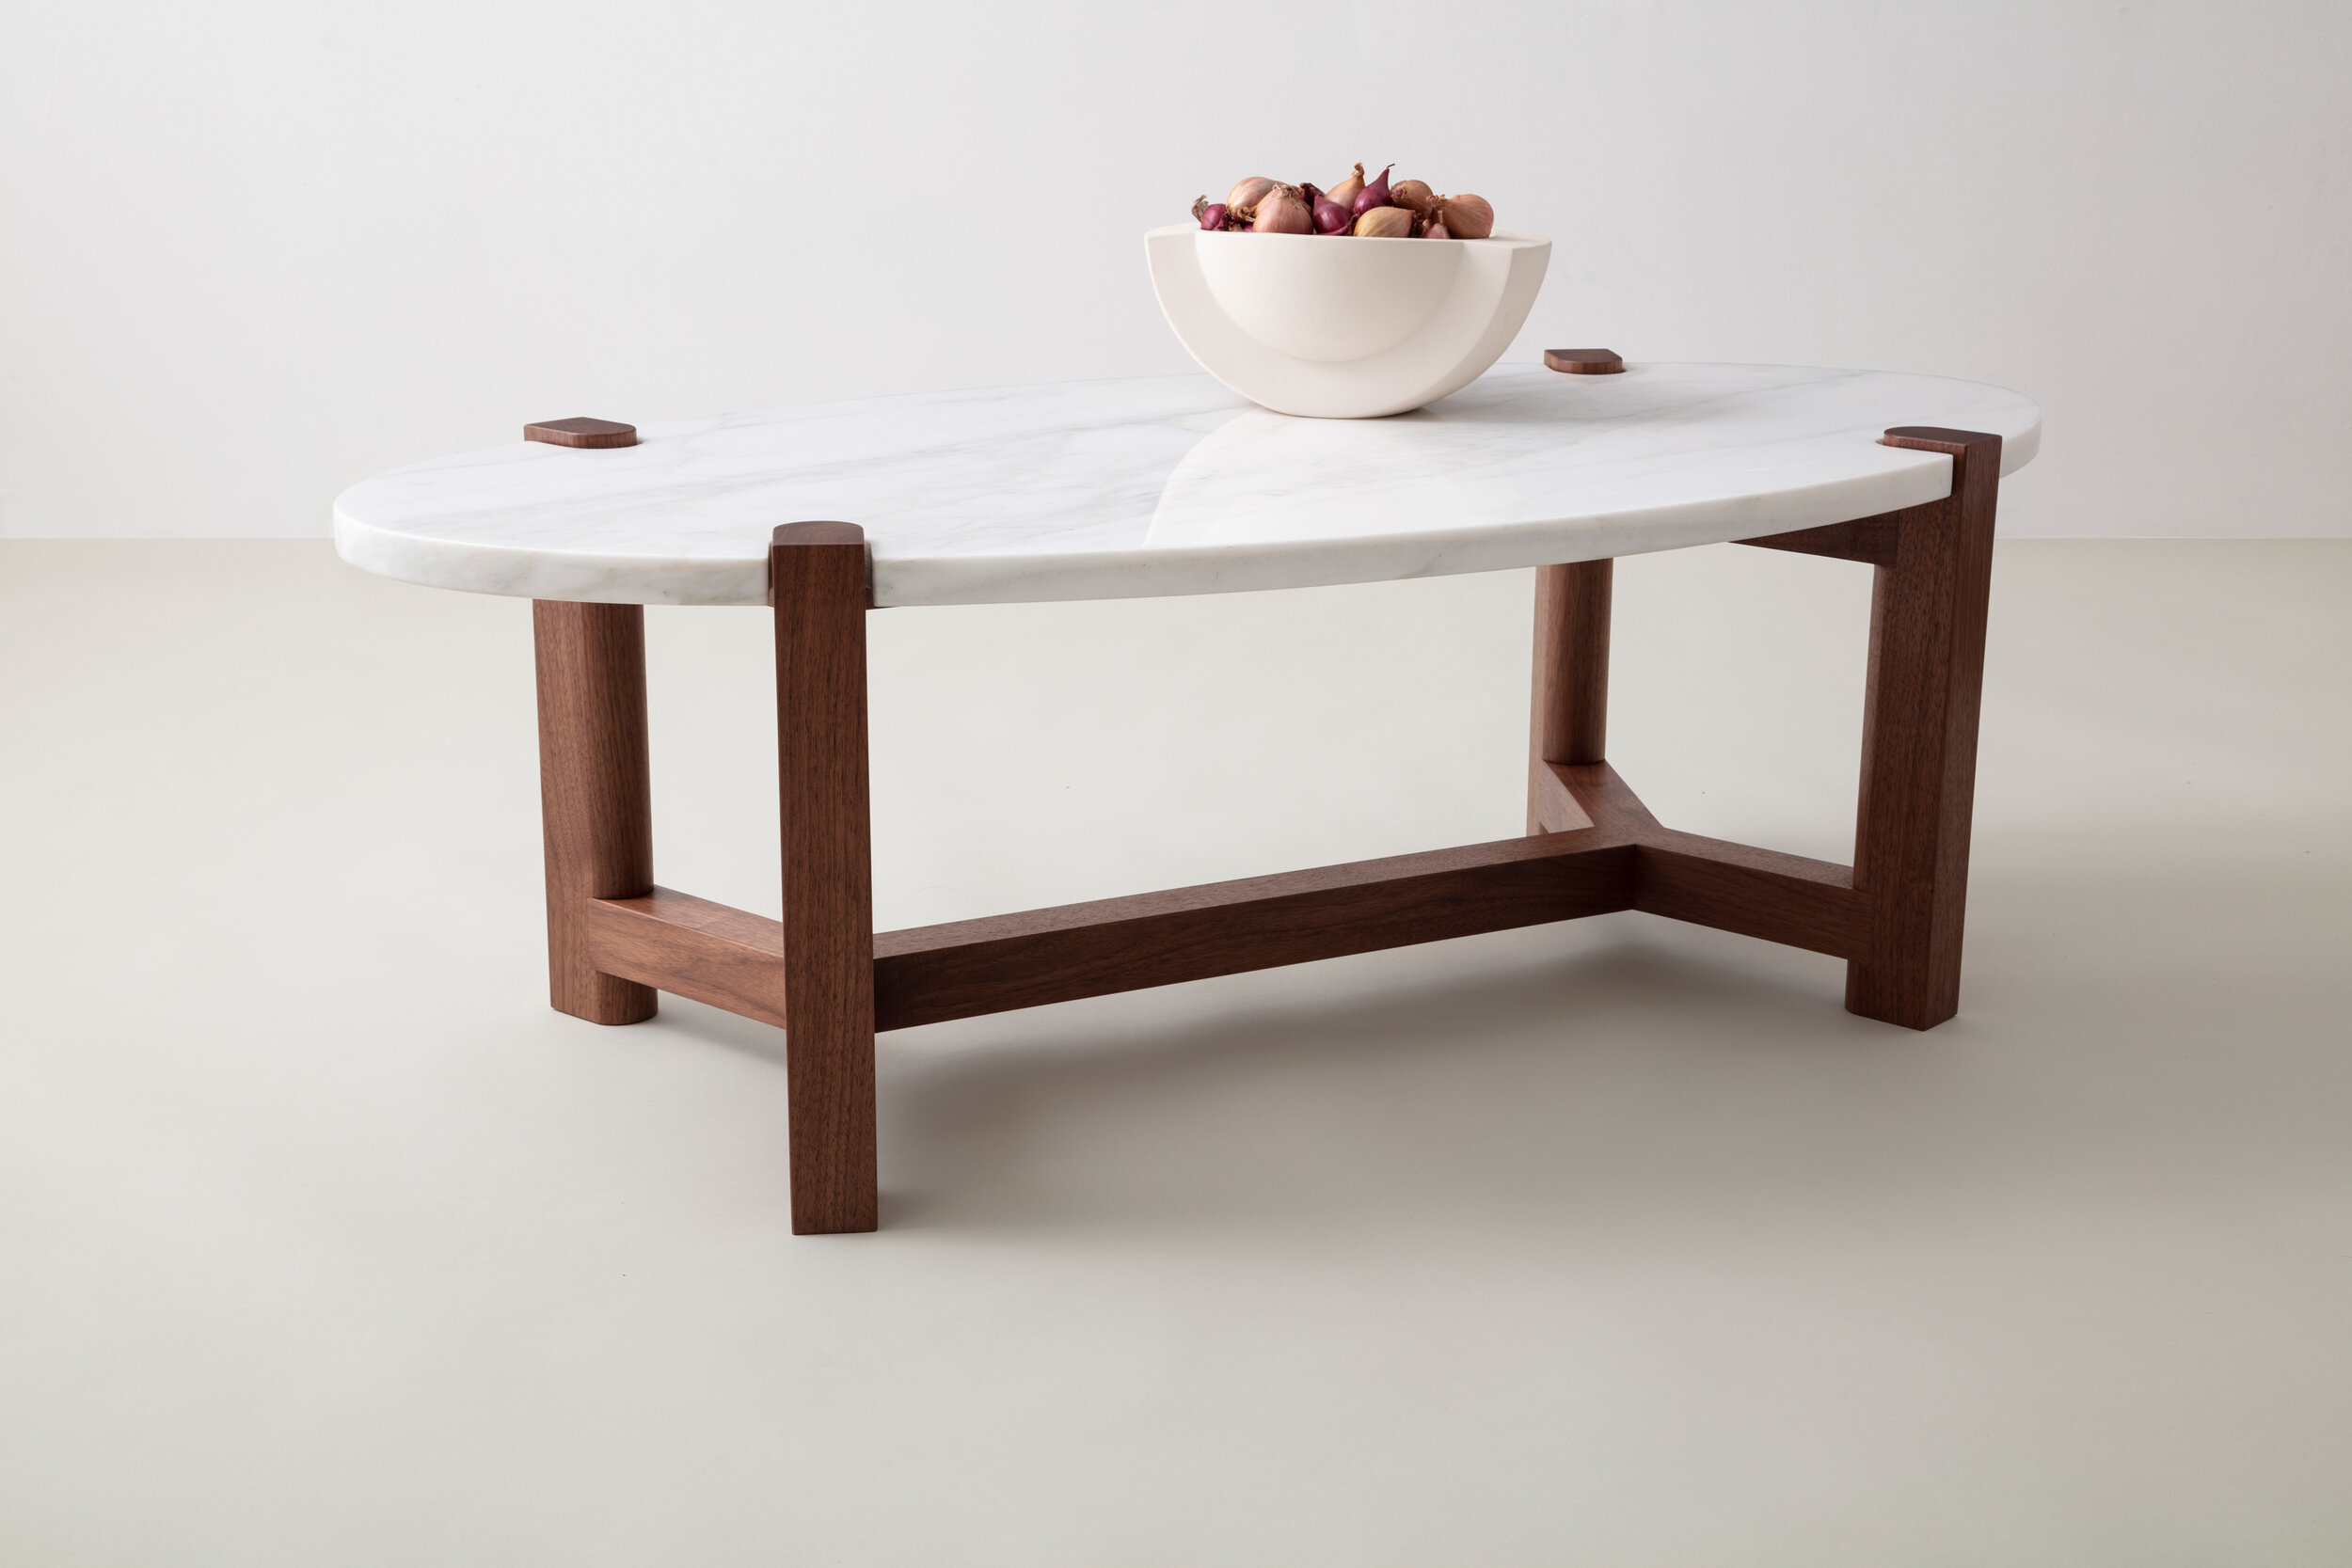 Pierce Coffee Table by David Gaynor Design